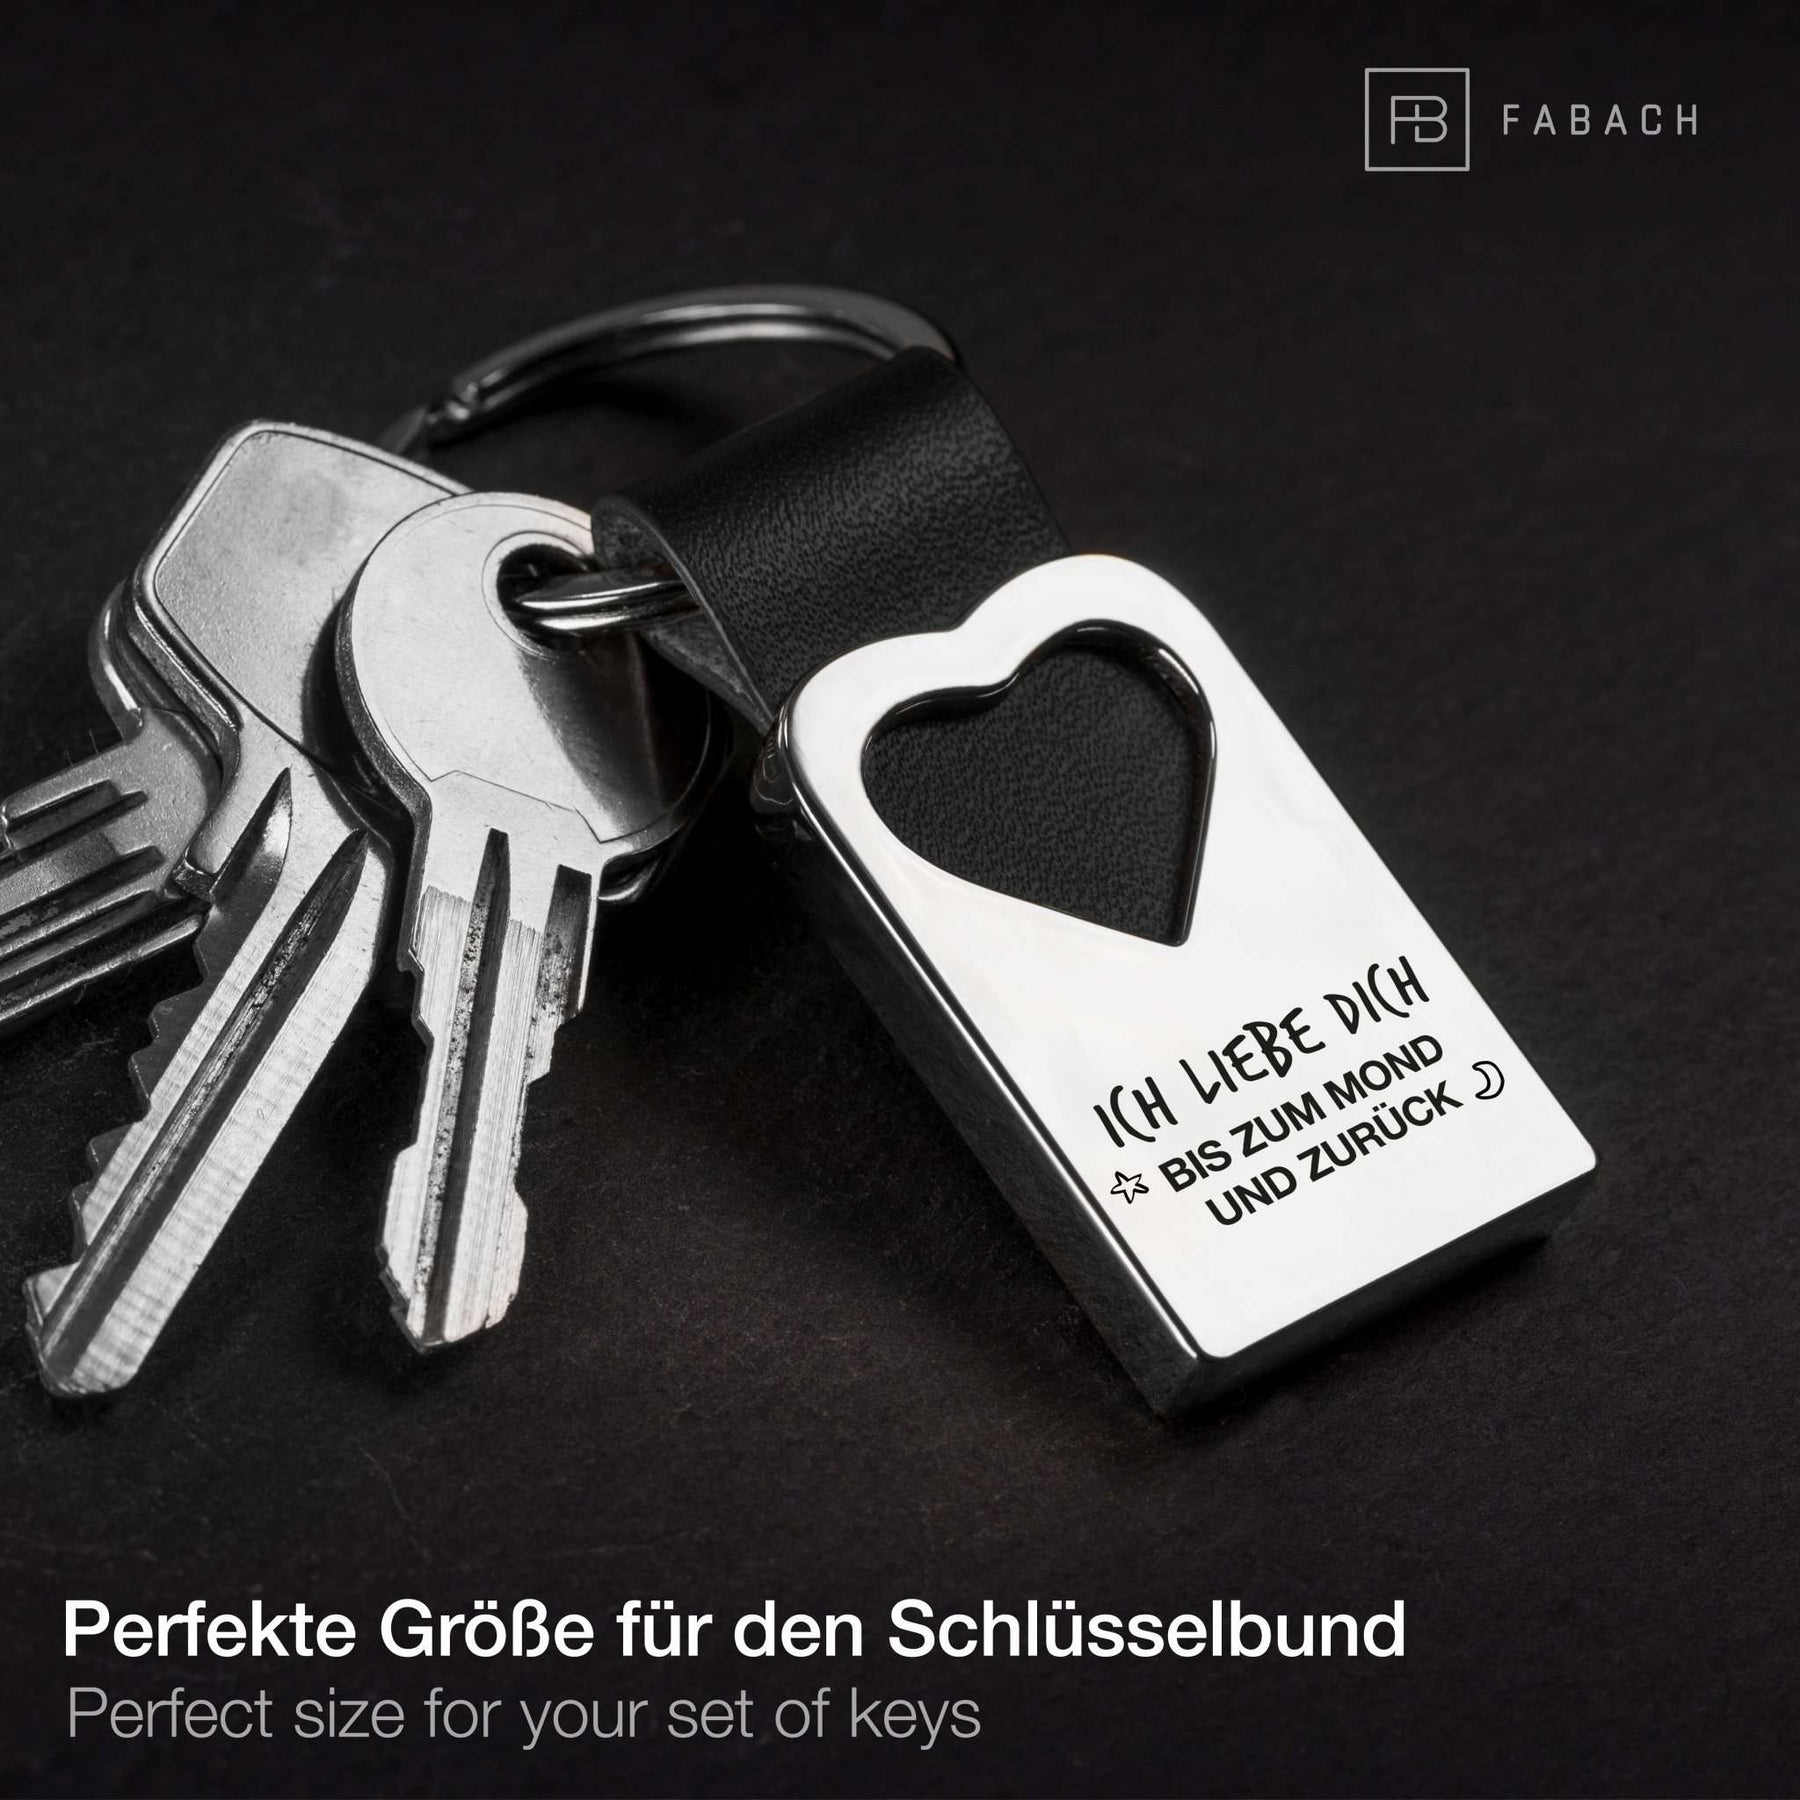 "Ich liebe dich bis zum Mond und zurück" Herz-Schlüsselanhänger mit Gravur aus Leder - FABACH